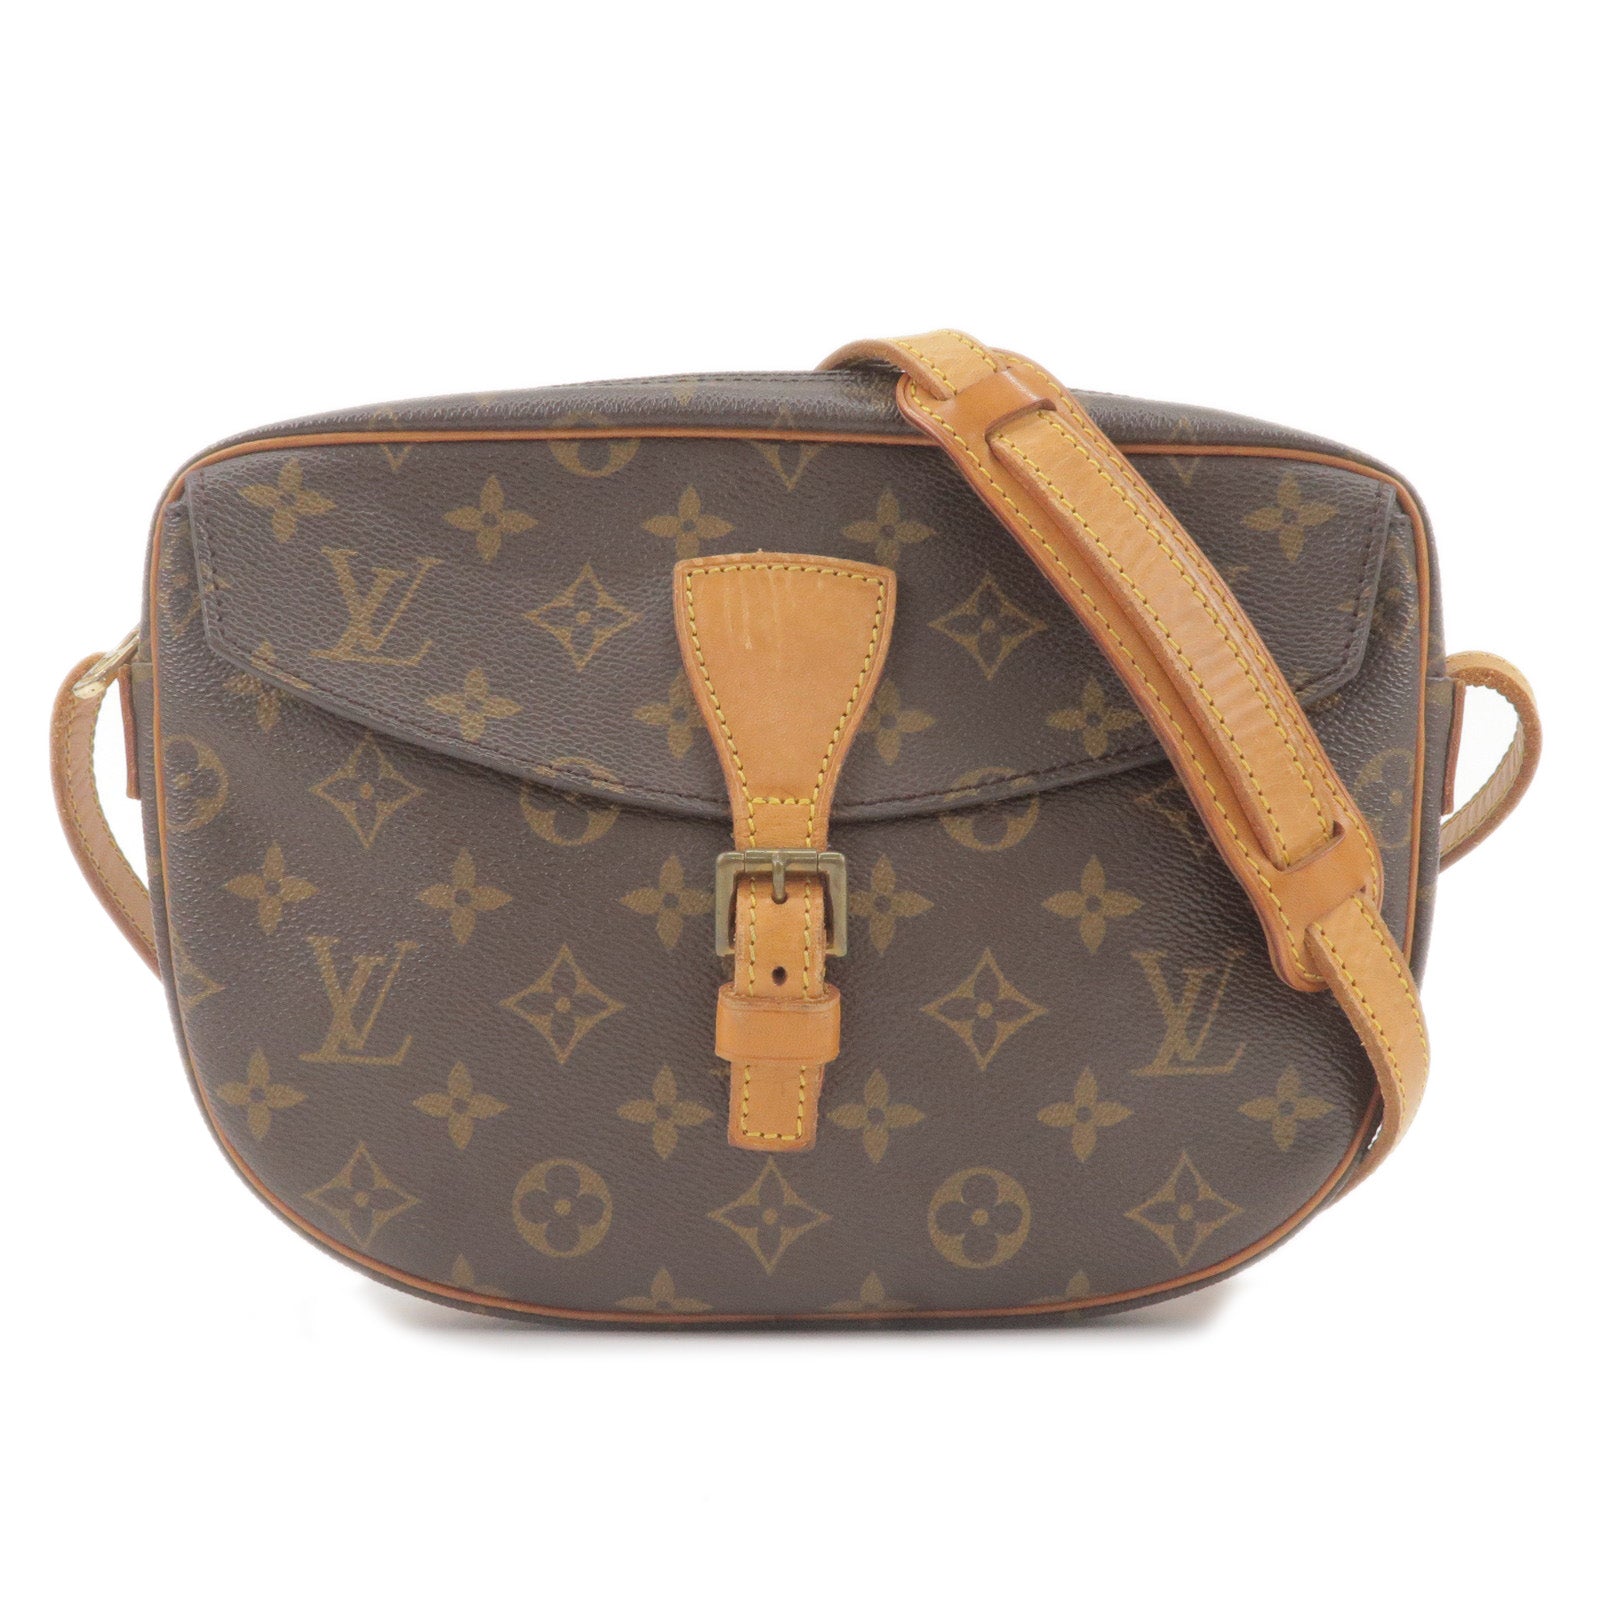 Authentic Louis Vuitton Monogram Jeune Fille PM Shoulder Bag M51227 Used F/S